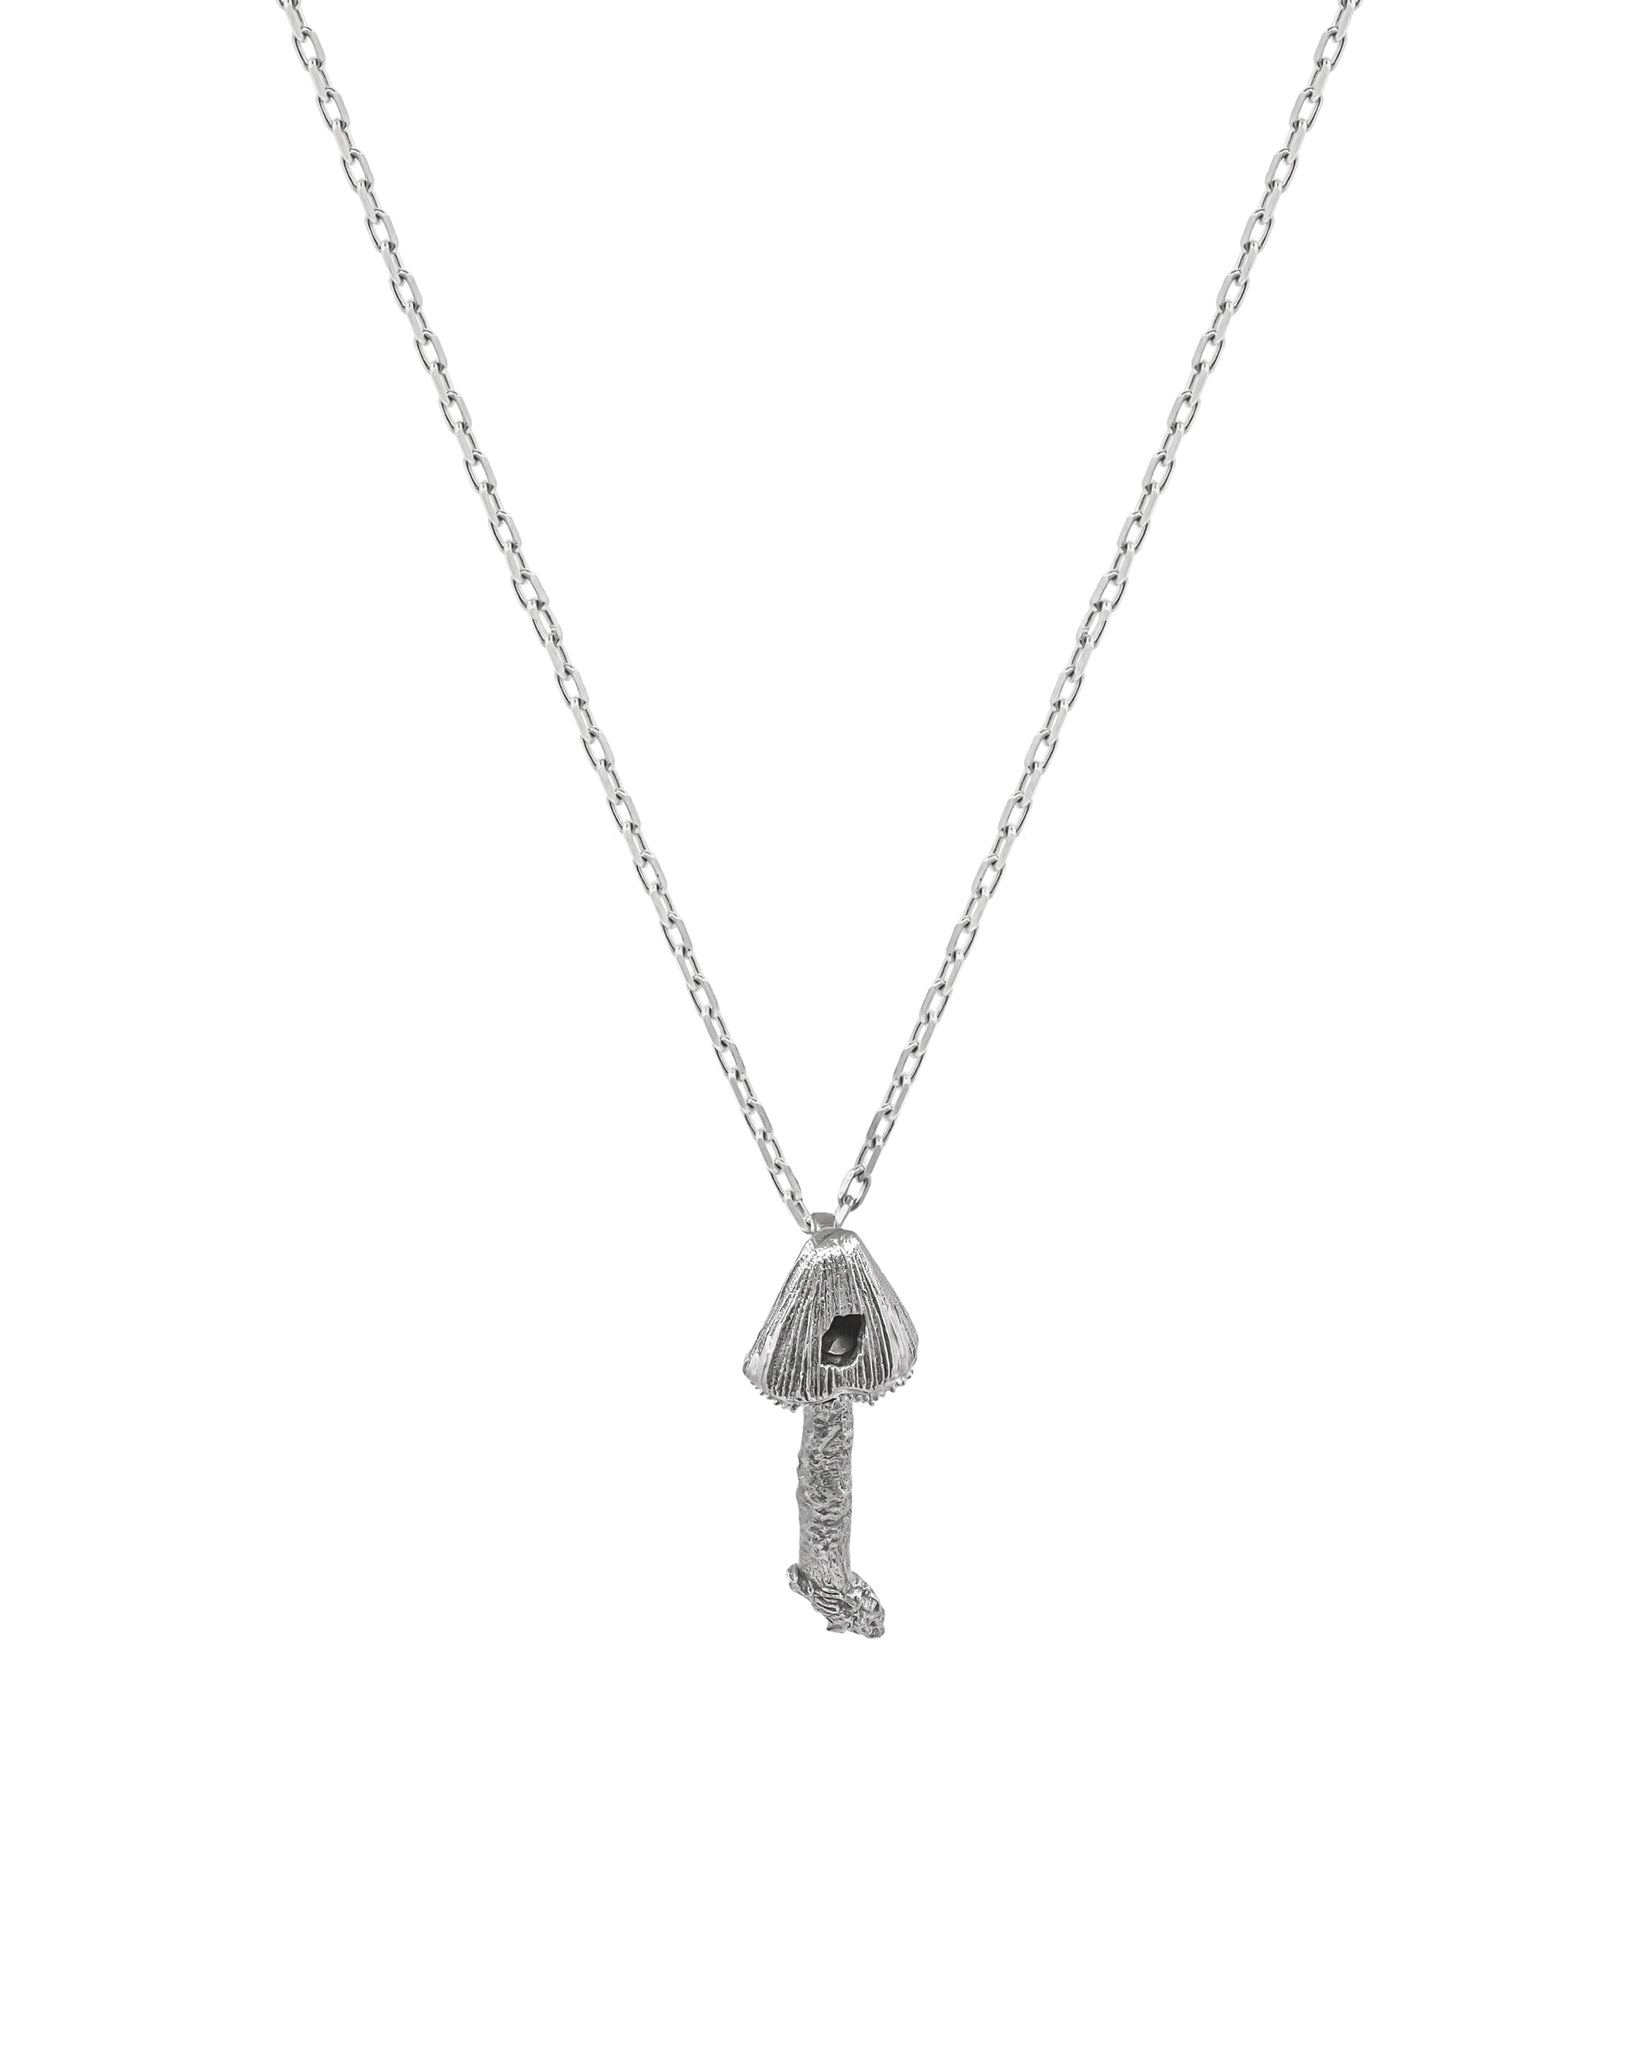 FUNGI Copri Single Charm Silver Necklace